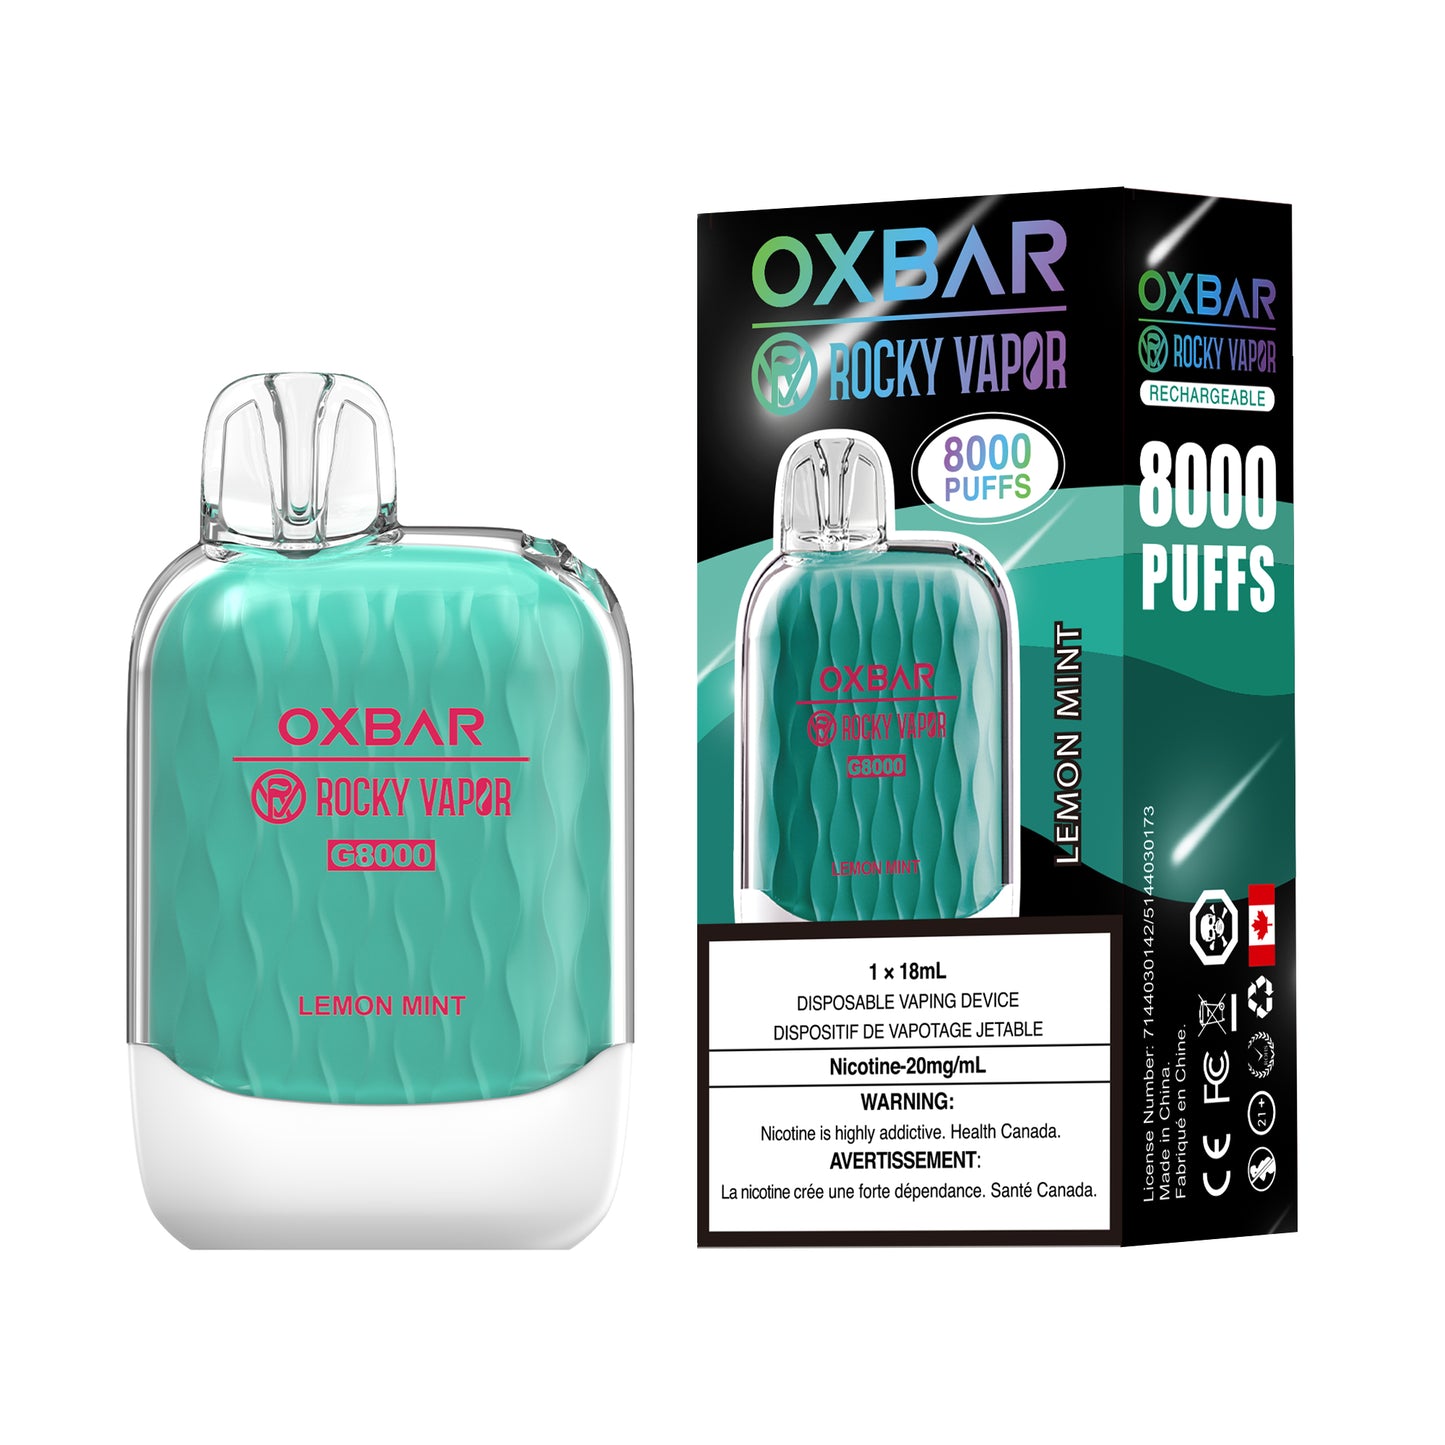 OXBAR G8000 - Lemon Mint (Pack of 5)